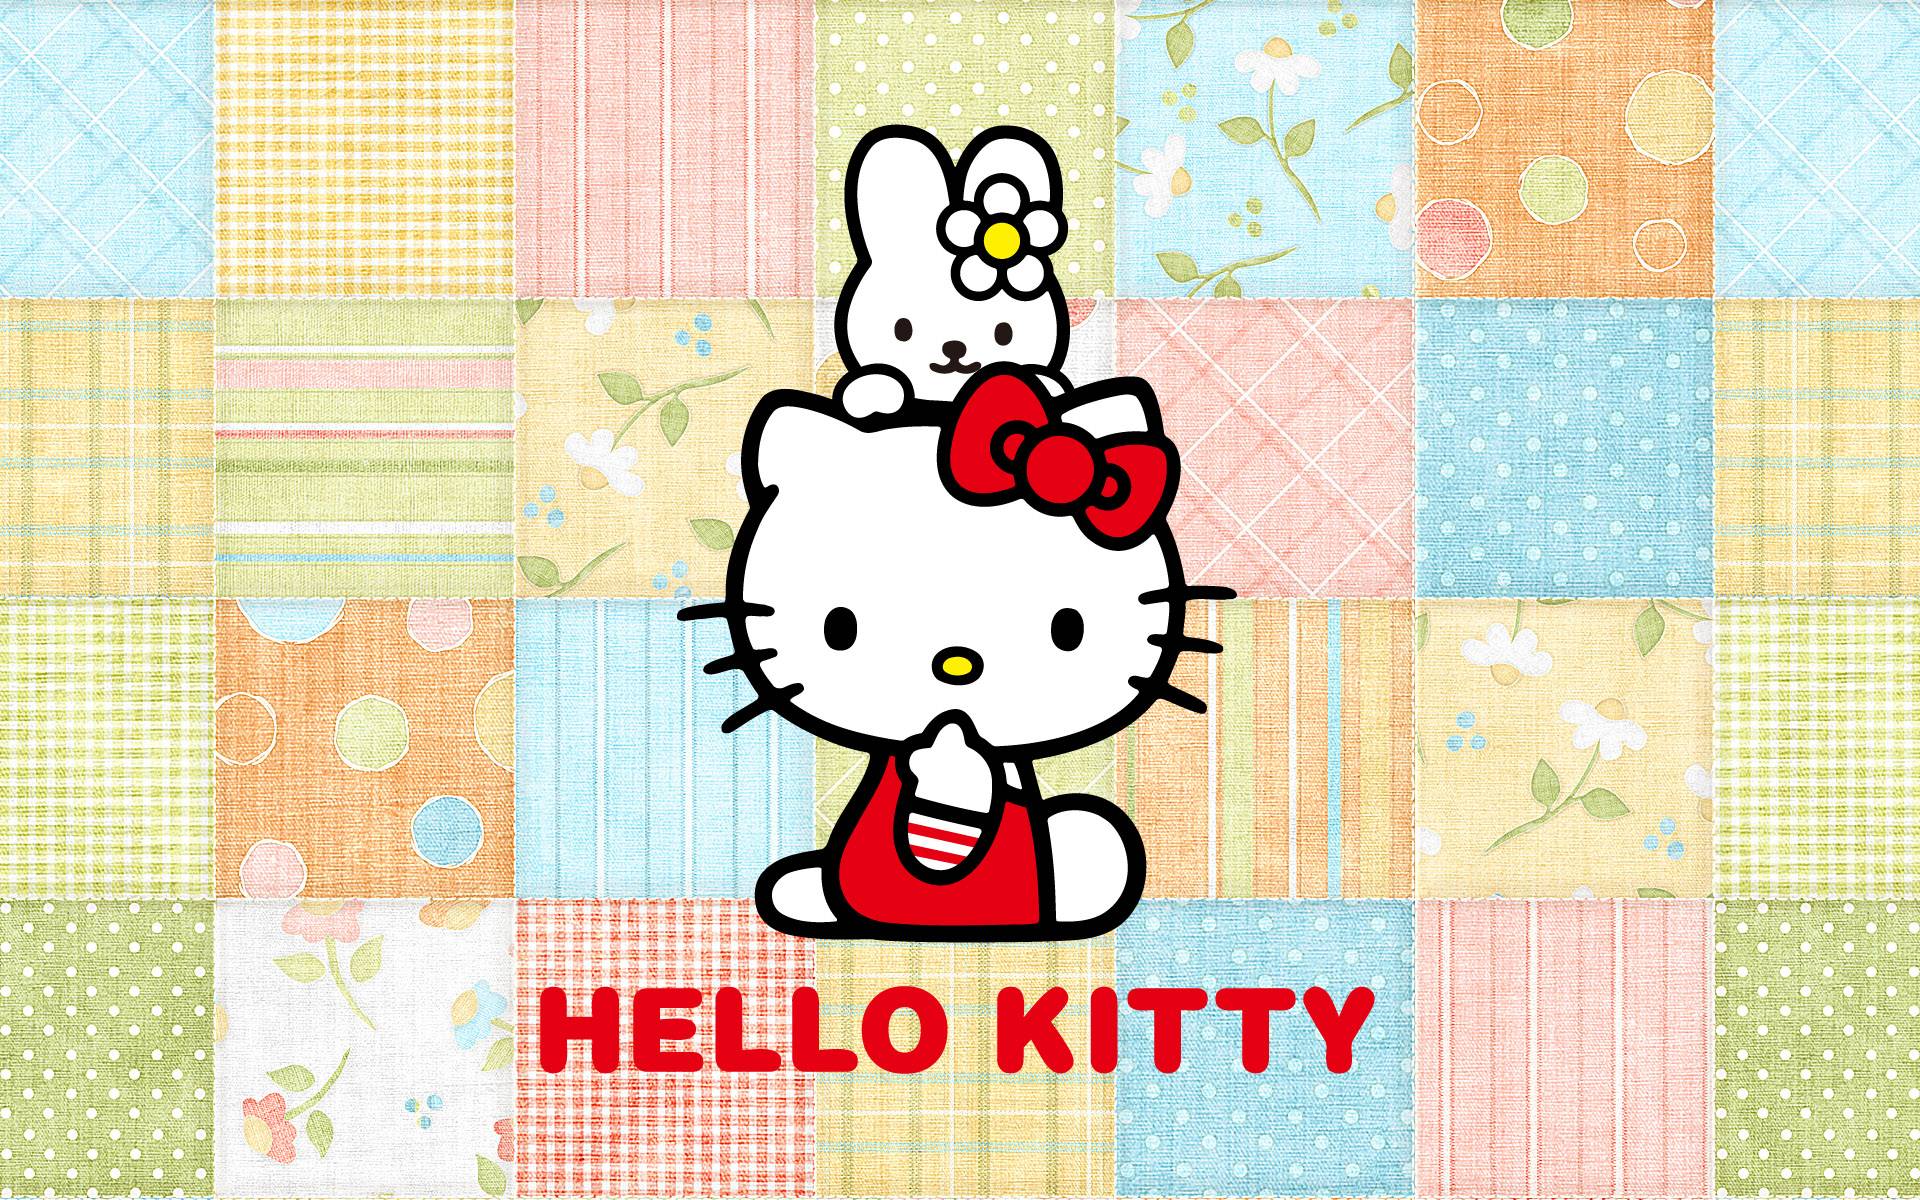 Các hình nền PC Hello Kitty sẽ giúp cho chiếc laptop hoặc máy tính cá nhân của bạn trông thật dễ thương và đáng yêu! Những hình ảnh Hello Kitty tinh tế và đầy màu sắc sẽ làm cho không gian làm việc của bạn thật phong phú. Chọn cho mình một hình nền đẹp và xem thử ngay! 